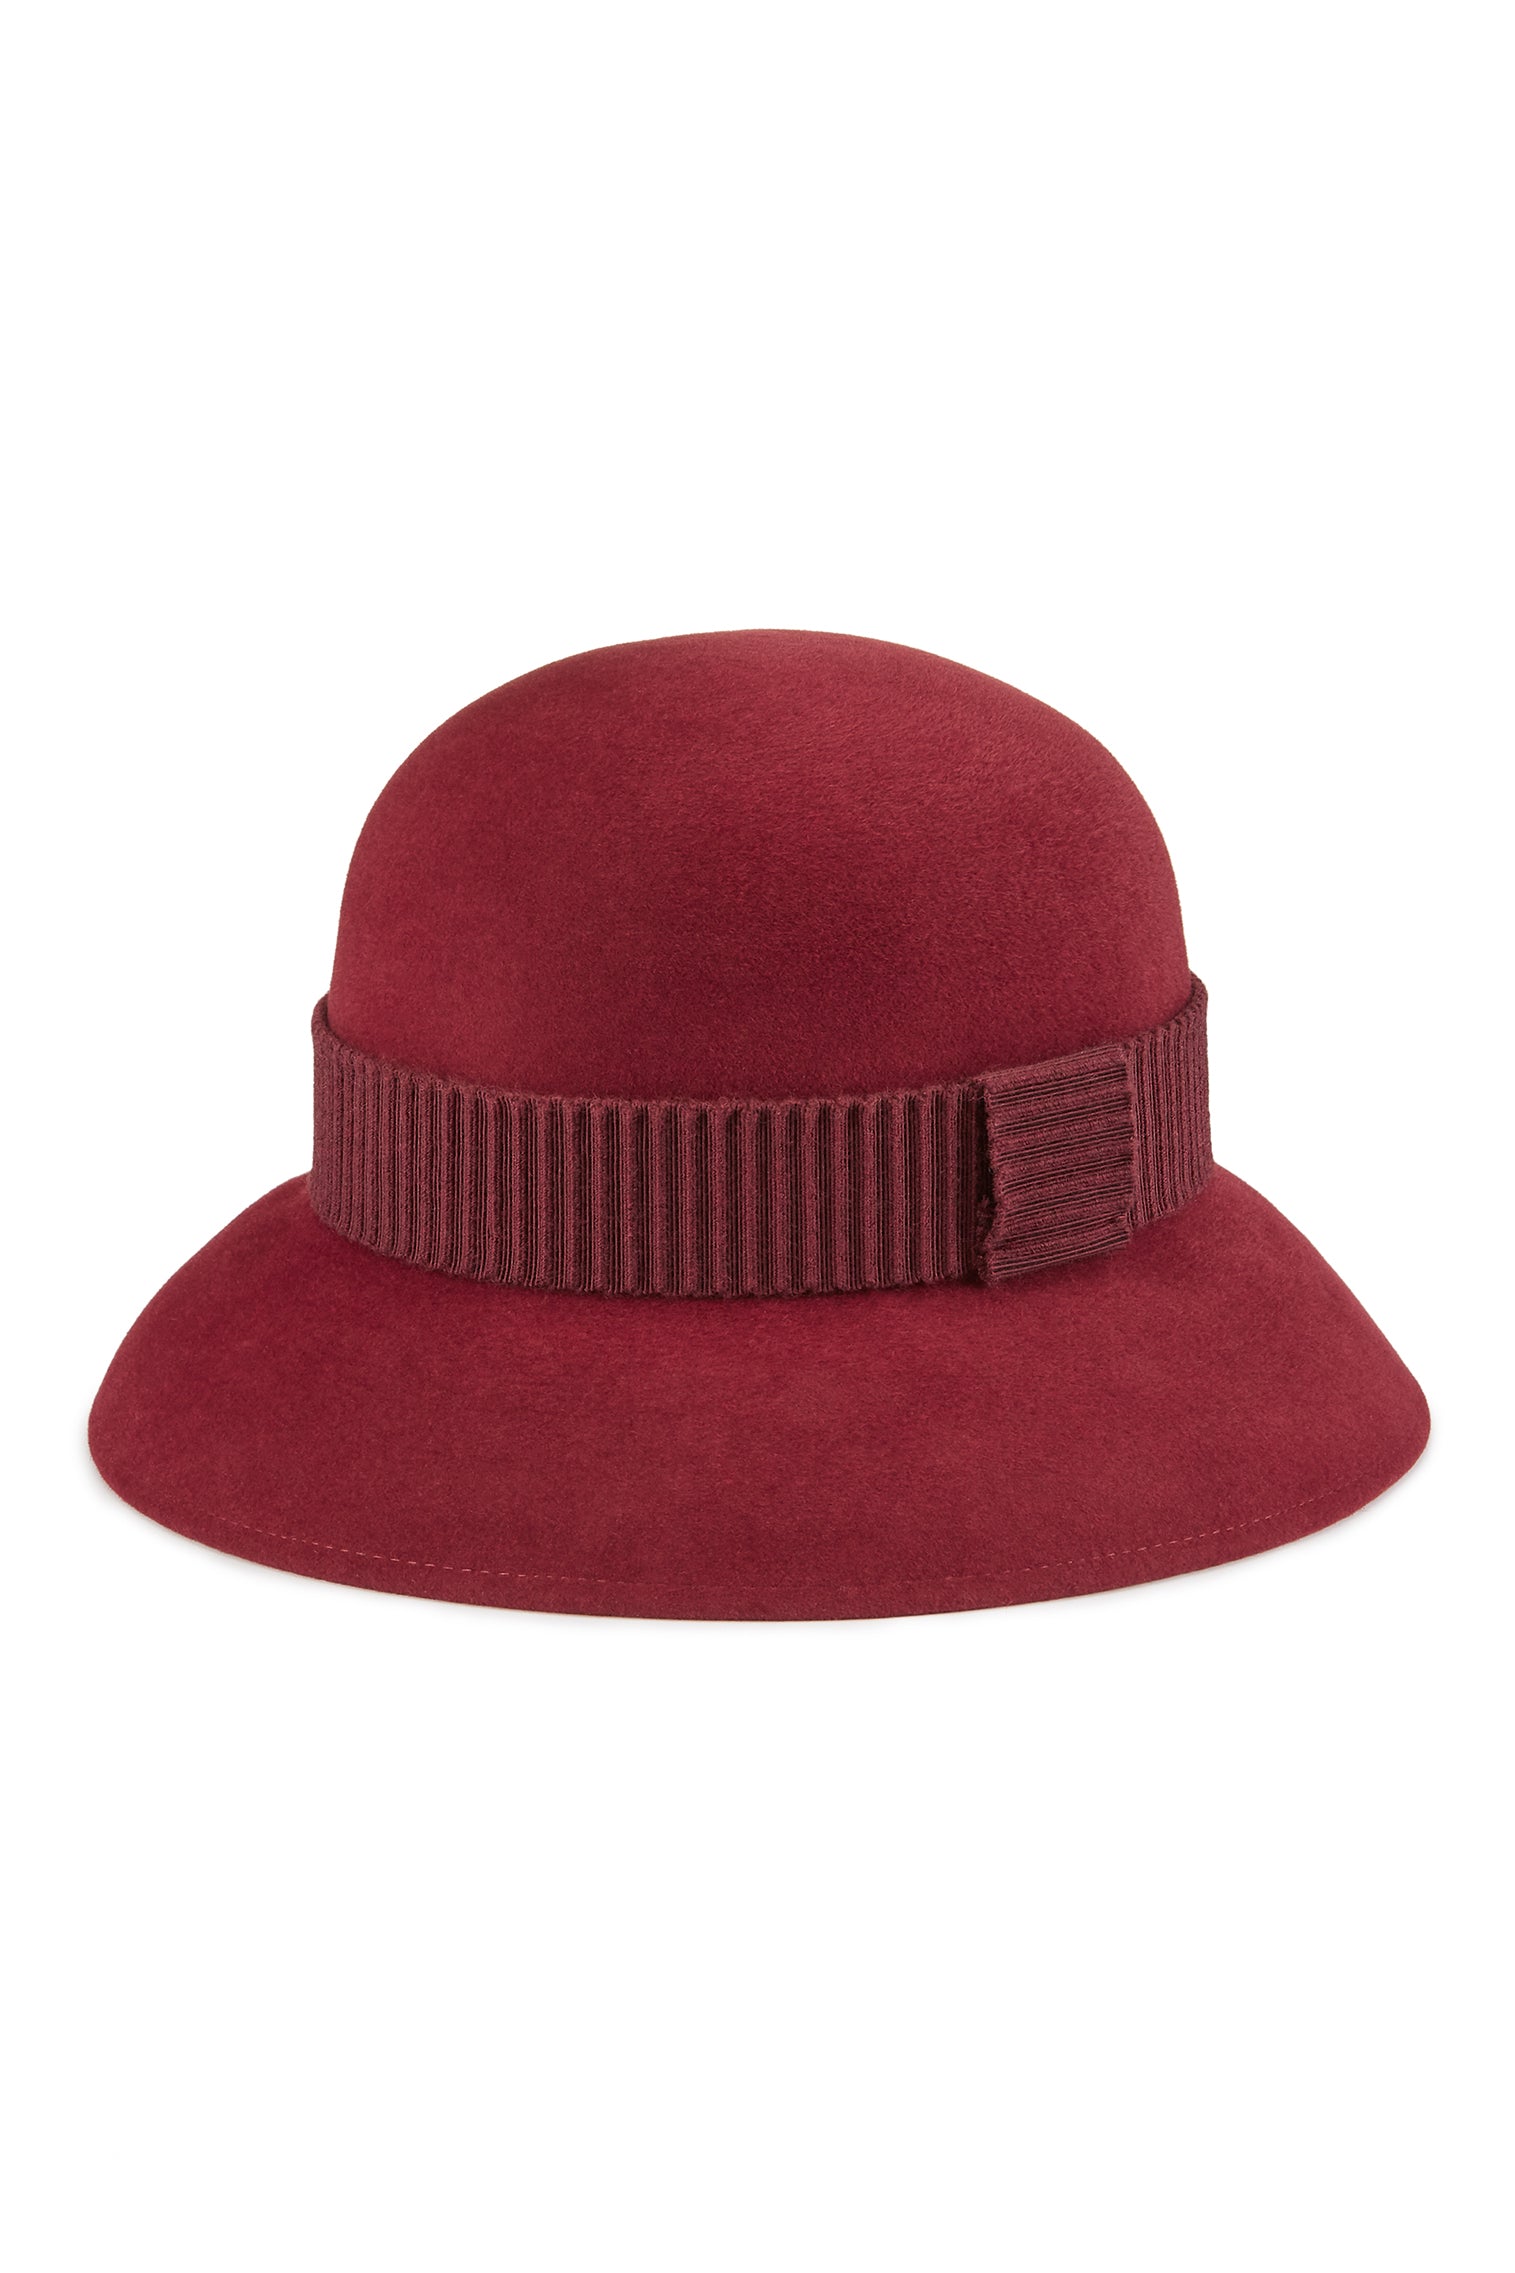 Hogarth Cloche - Black Hats for Women - Lock & Co. Hatters London UK